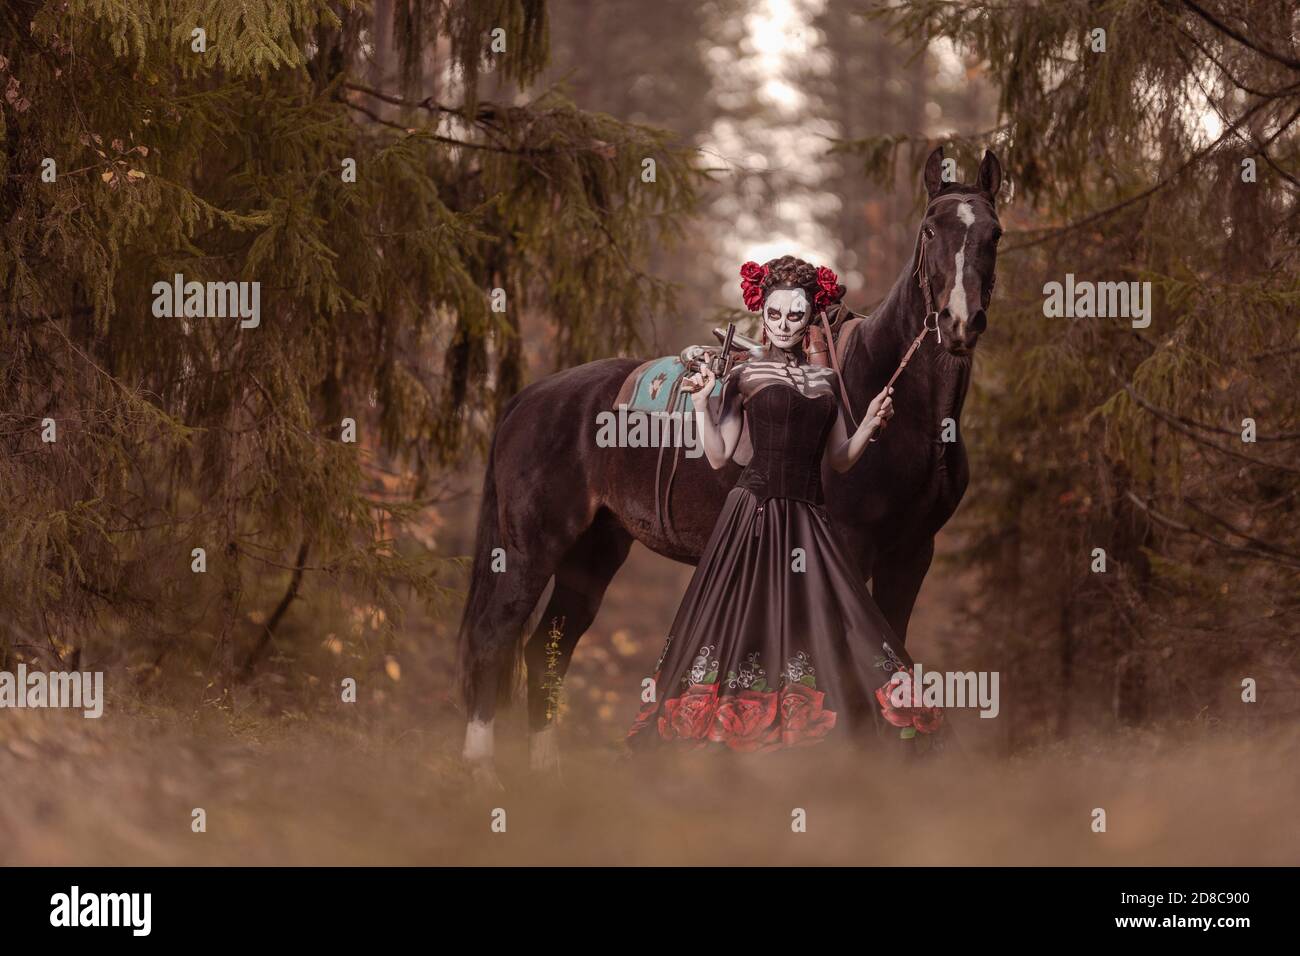 Giovane donna vestita come il simbolo messicano del giorno della calavera morta in un vestito nero che si posa in la foresta con un cavallo Foto Stock